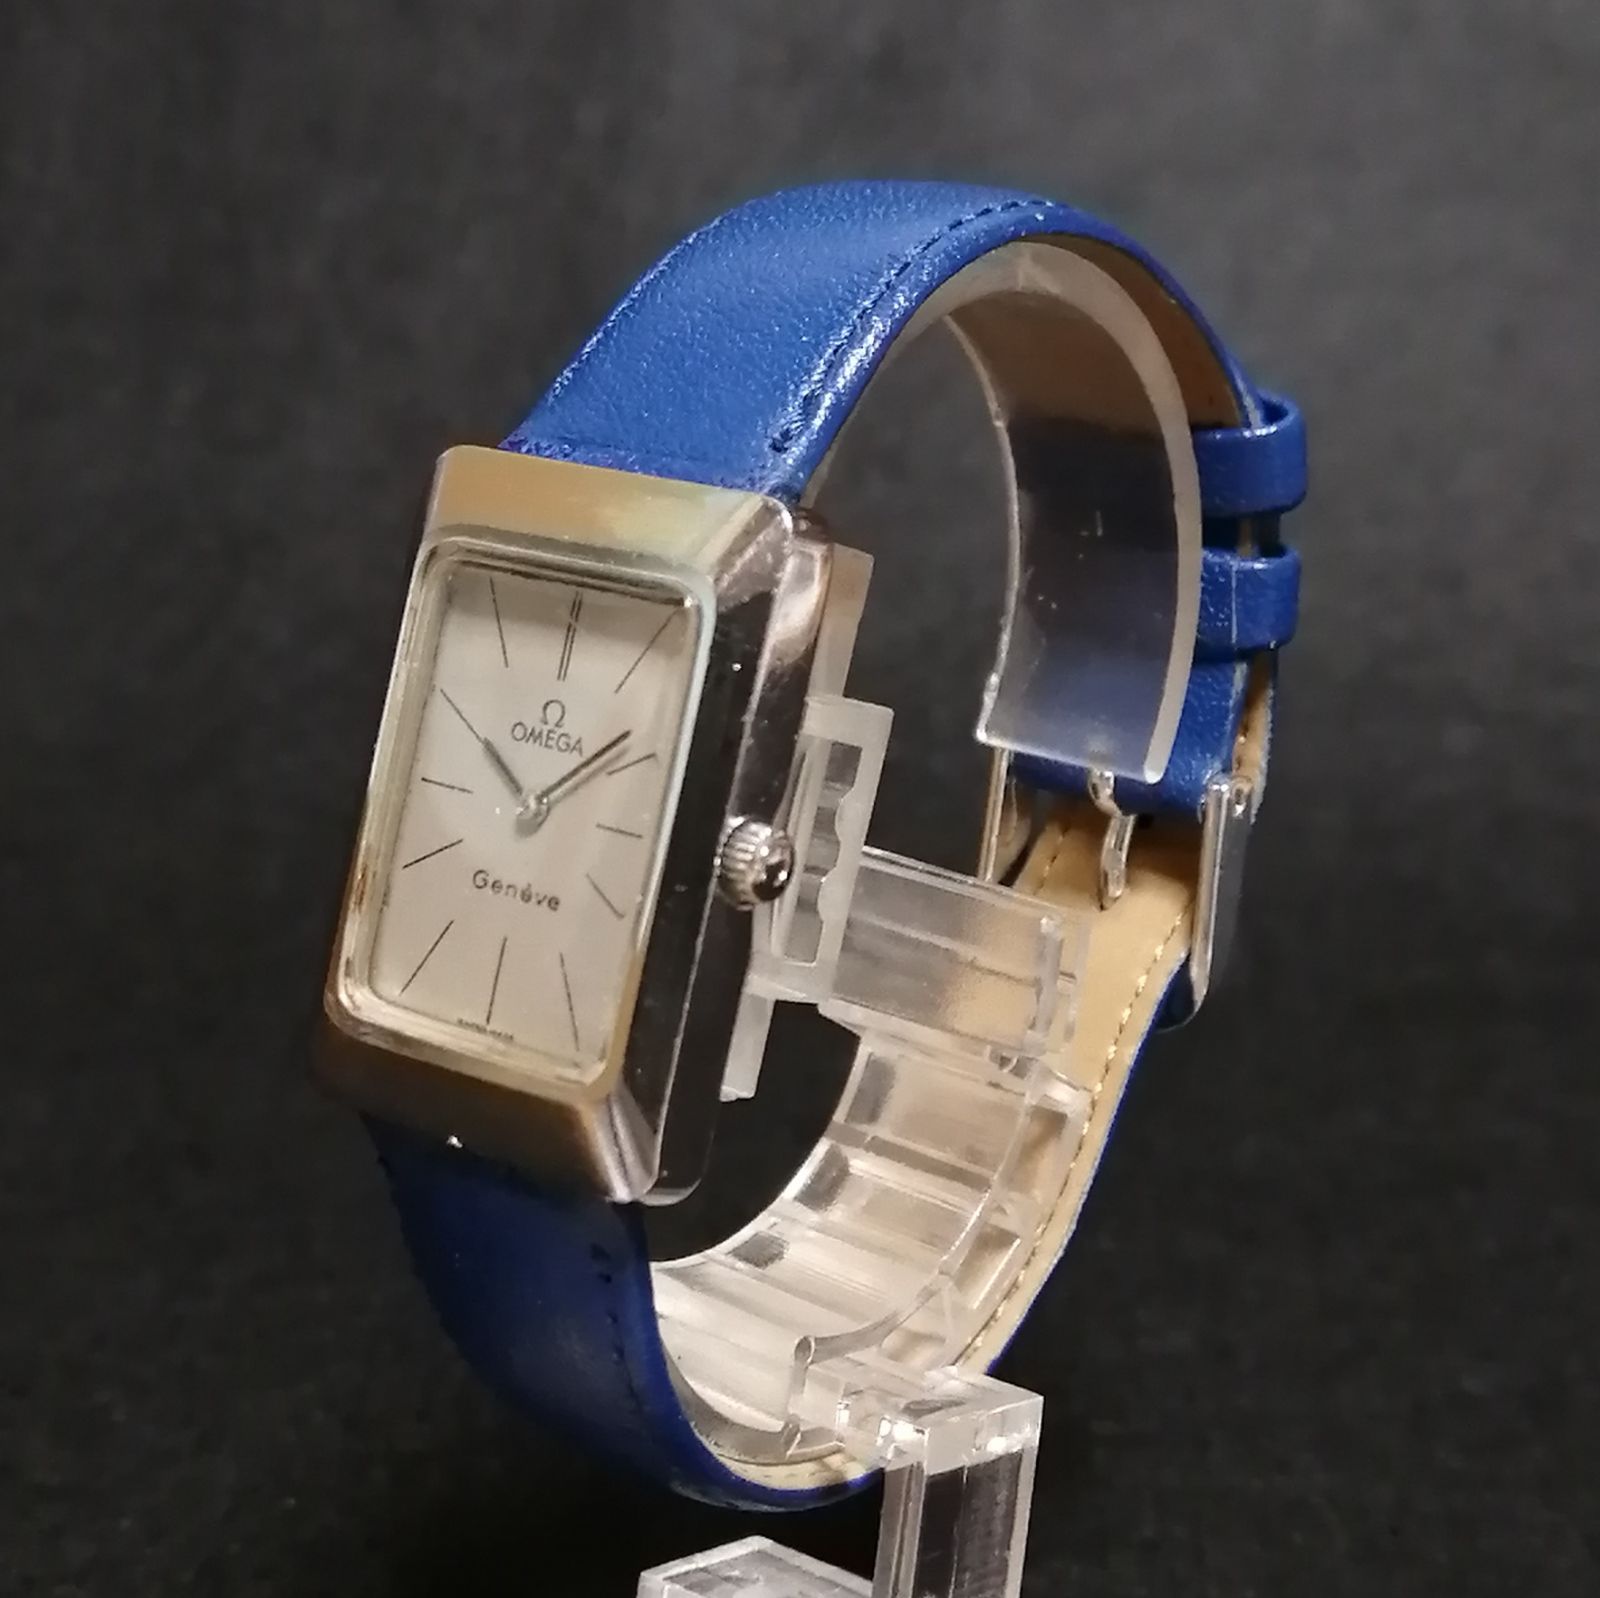 7,310円⭐️OMEGA Geneve レディース 腕時計